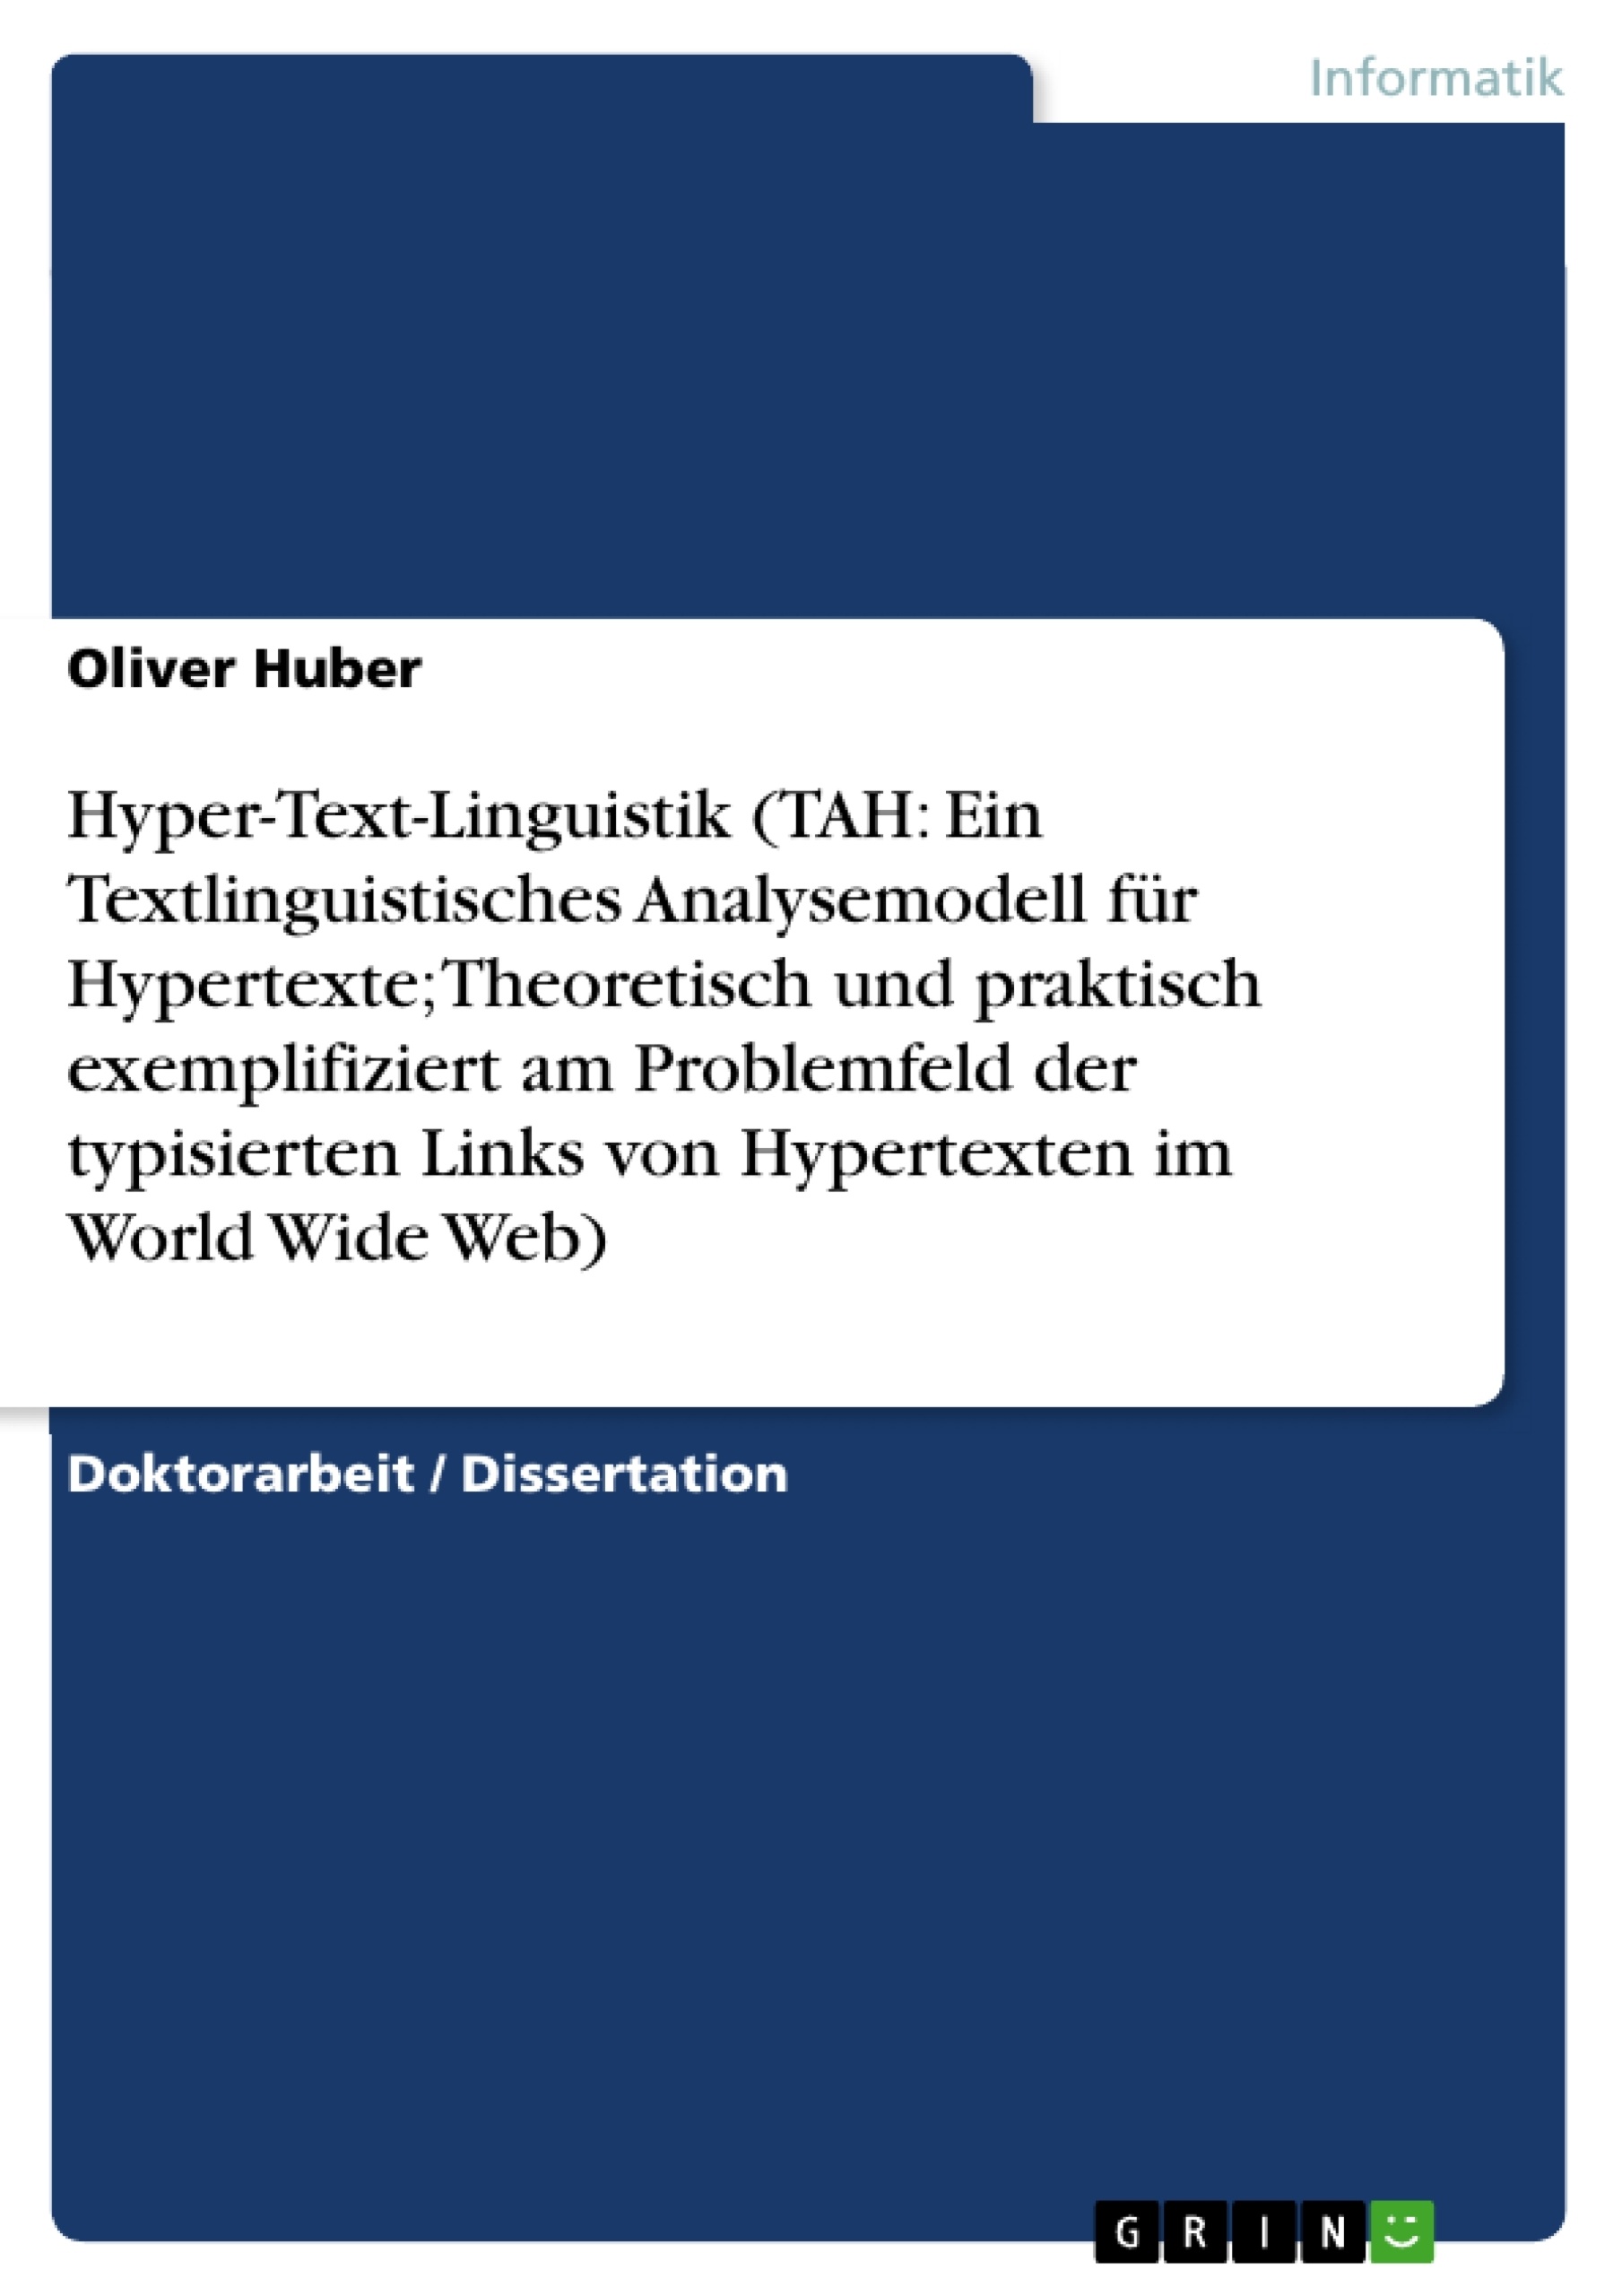 Título: Hyper-Text-Linguistik (TAH: Ein Textlinguistisches Analysemodell für Hypertexte; Theoretisch und praktisch exemplifiziert am Problemfeld der typisierten Links von Hypertexten im World Wide Web)